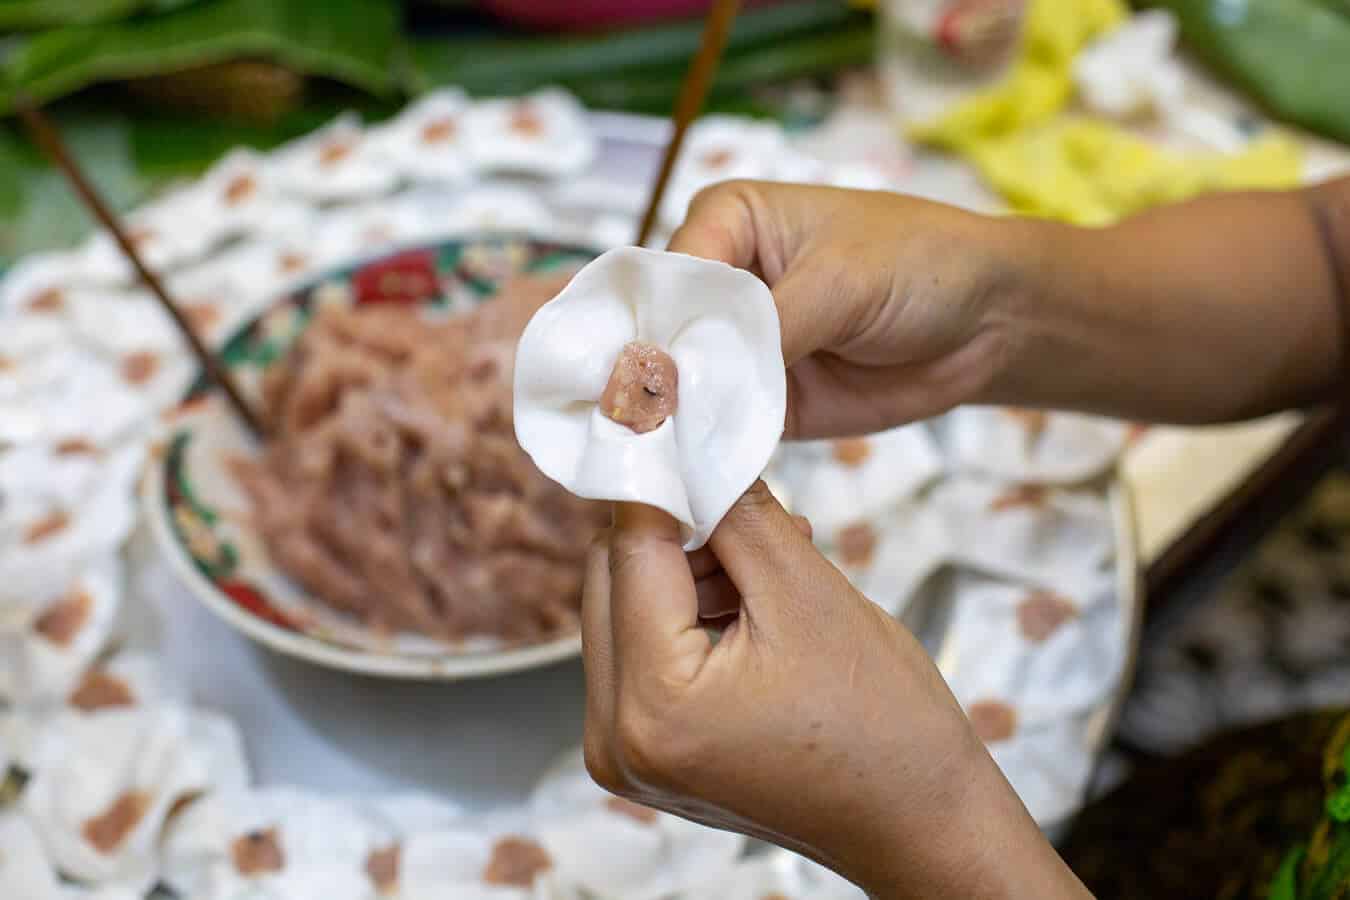 How to make white rose dumpling